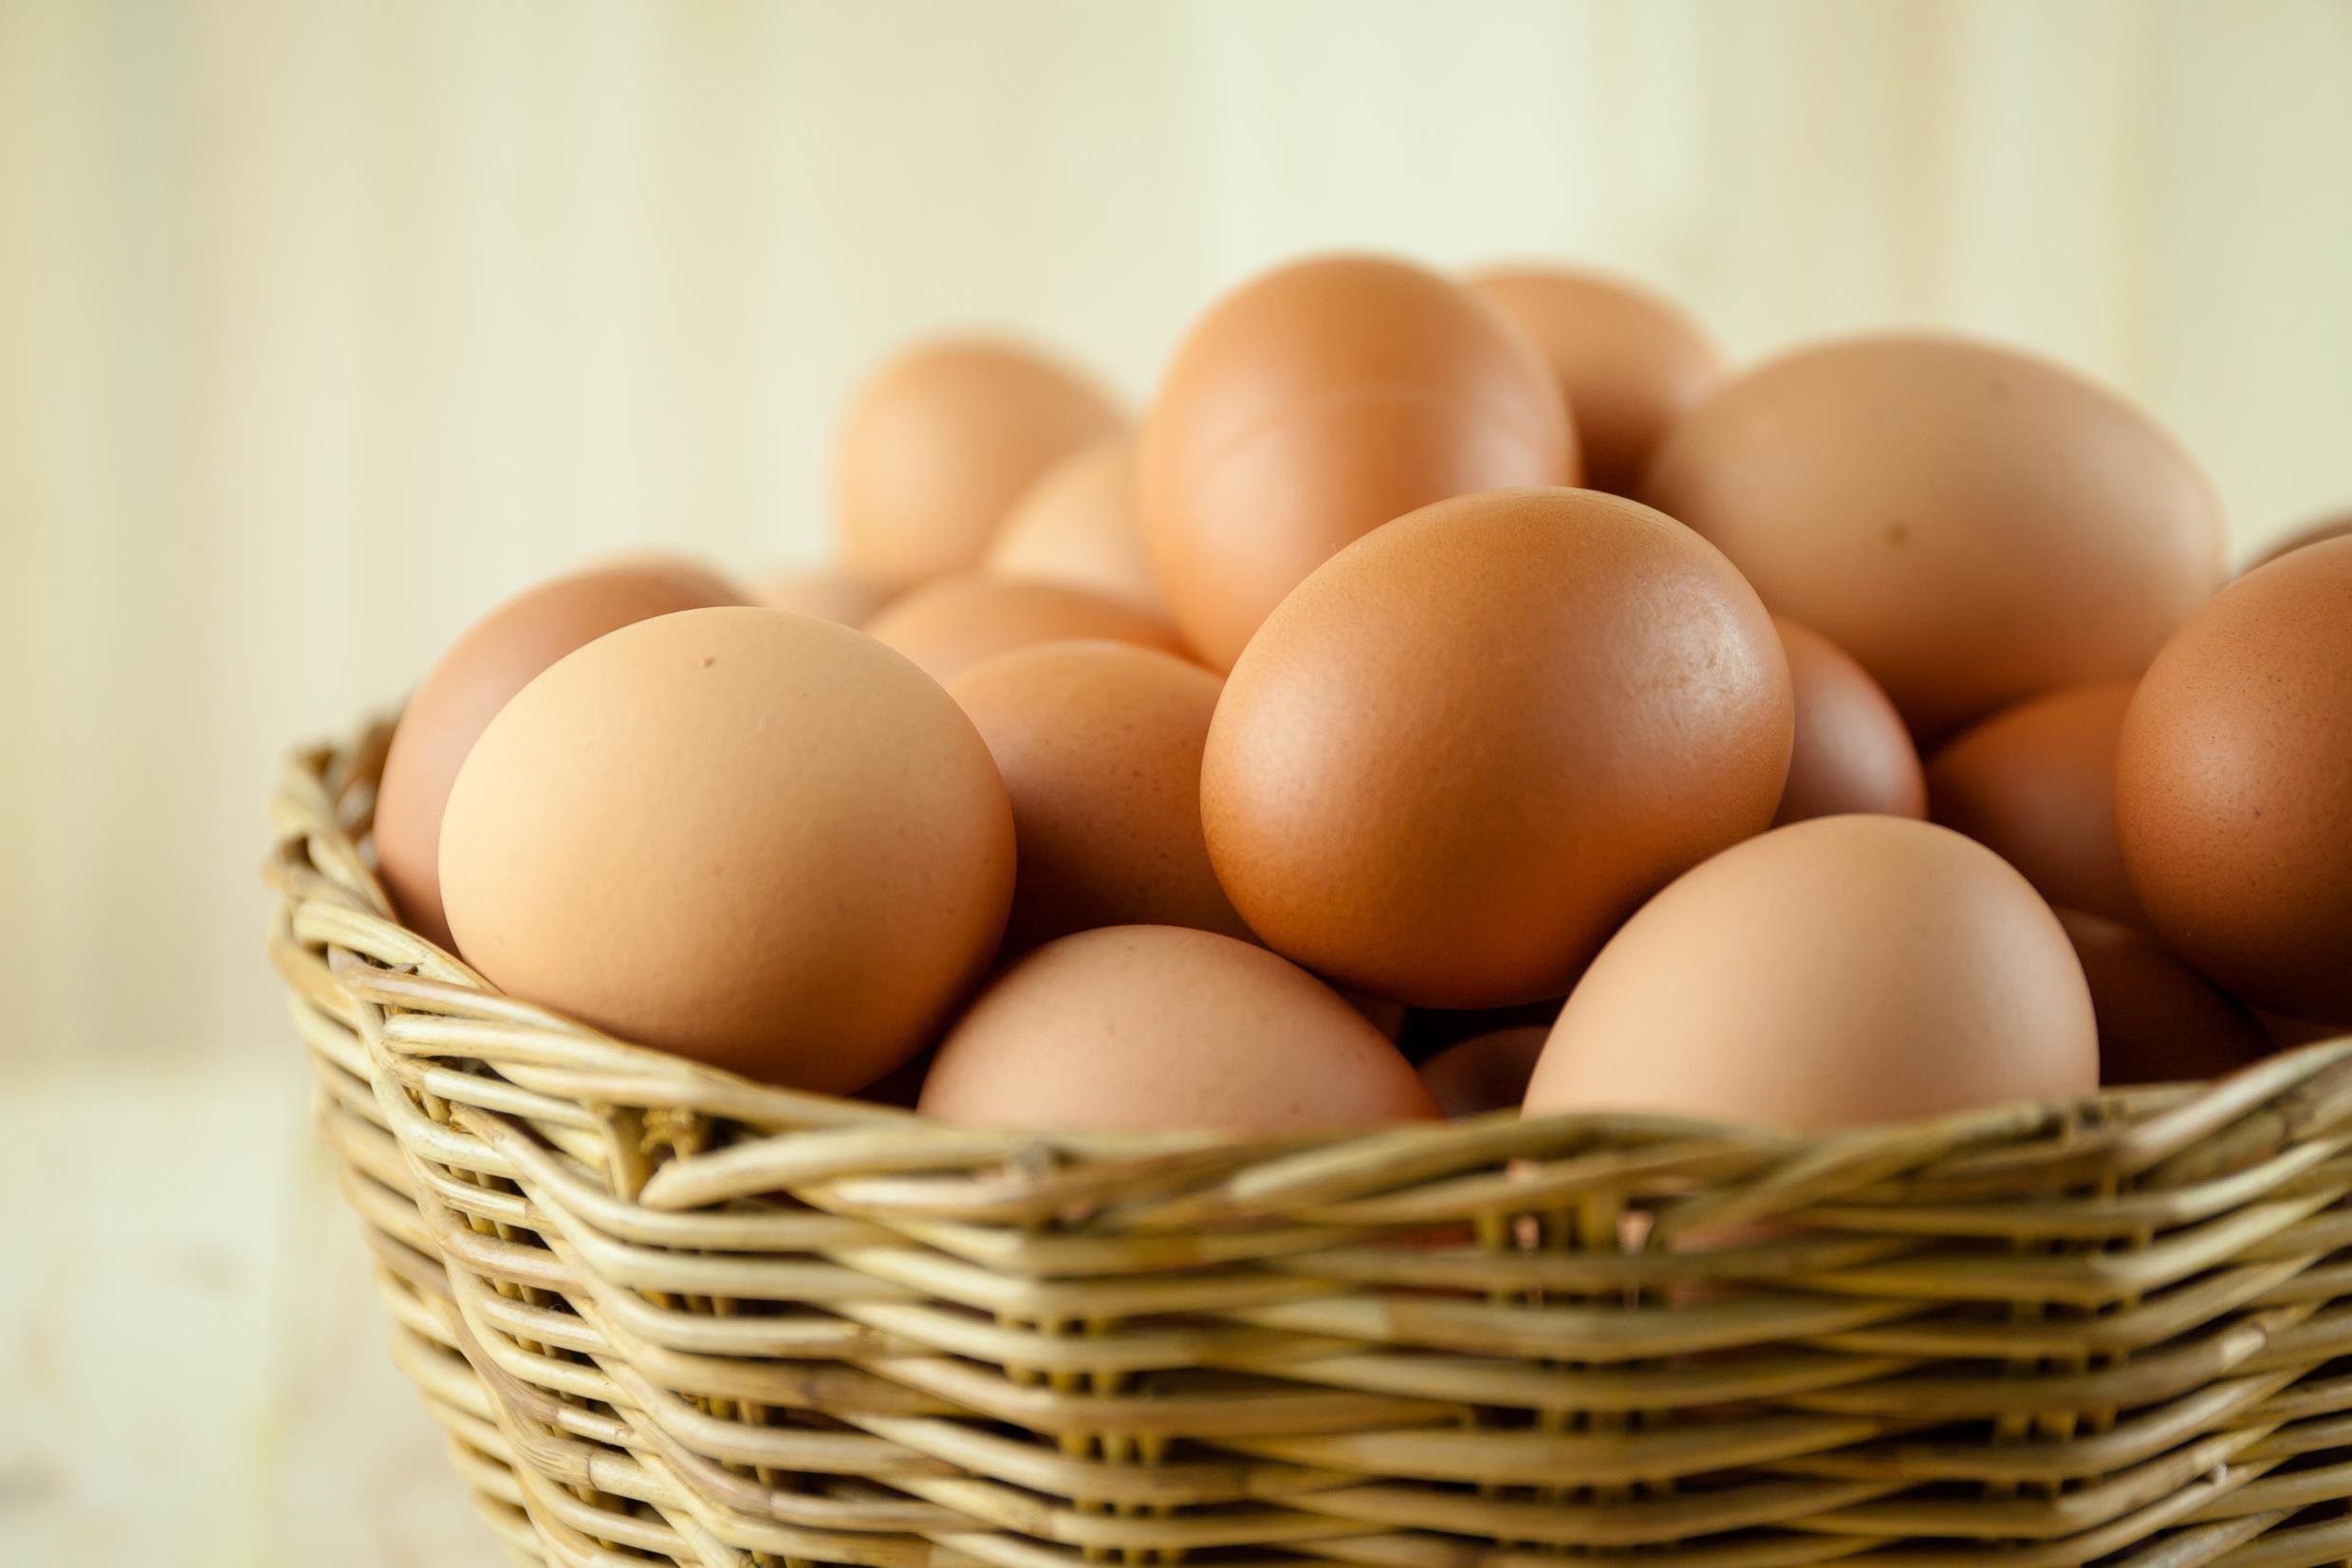 eggs-in-one-basket-gettyimages-486369214.jpg